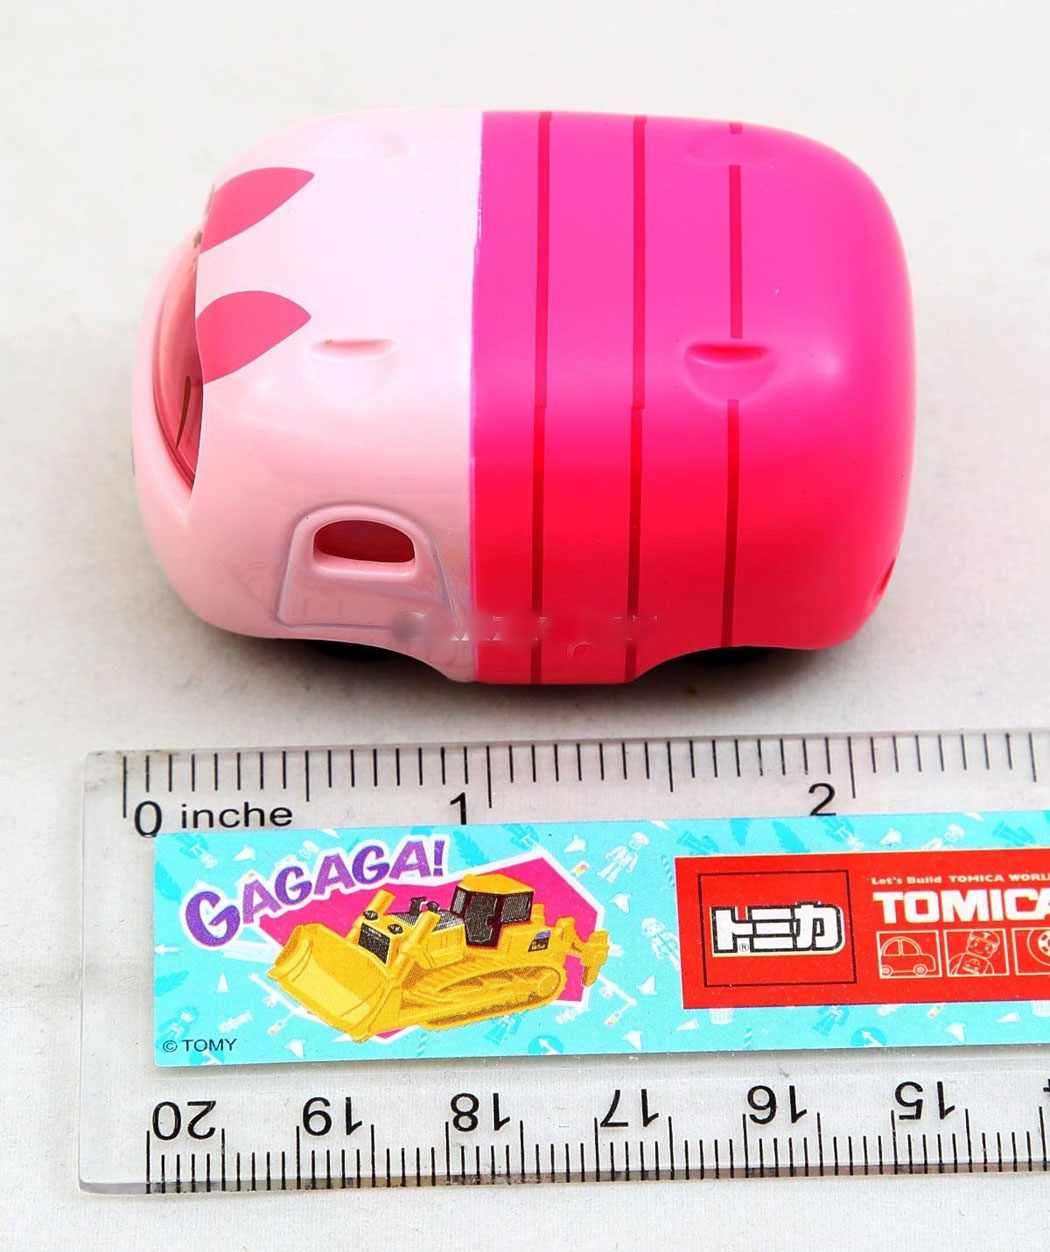 Xe ô tô đồ chơi Nhật Bản Disney Tsum Tsum Piglet